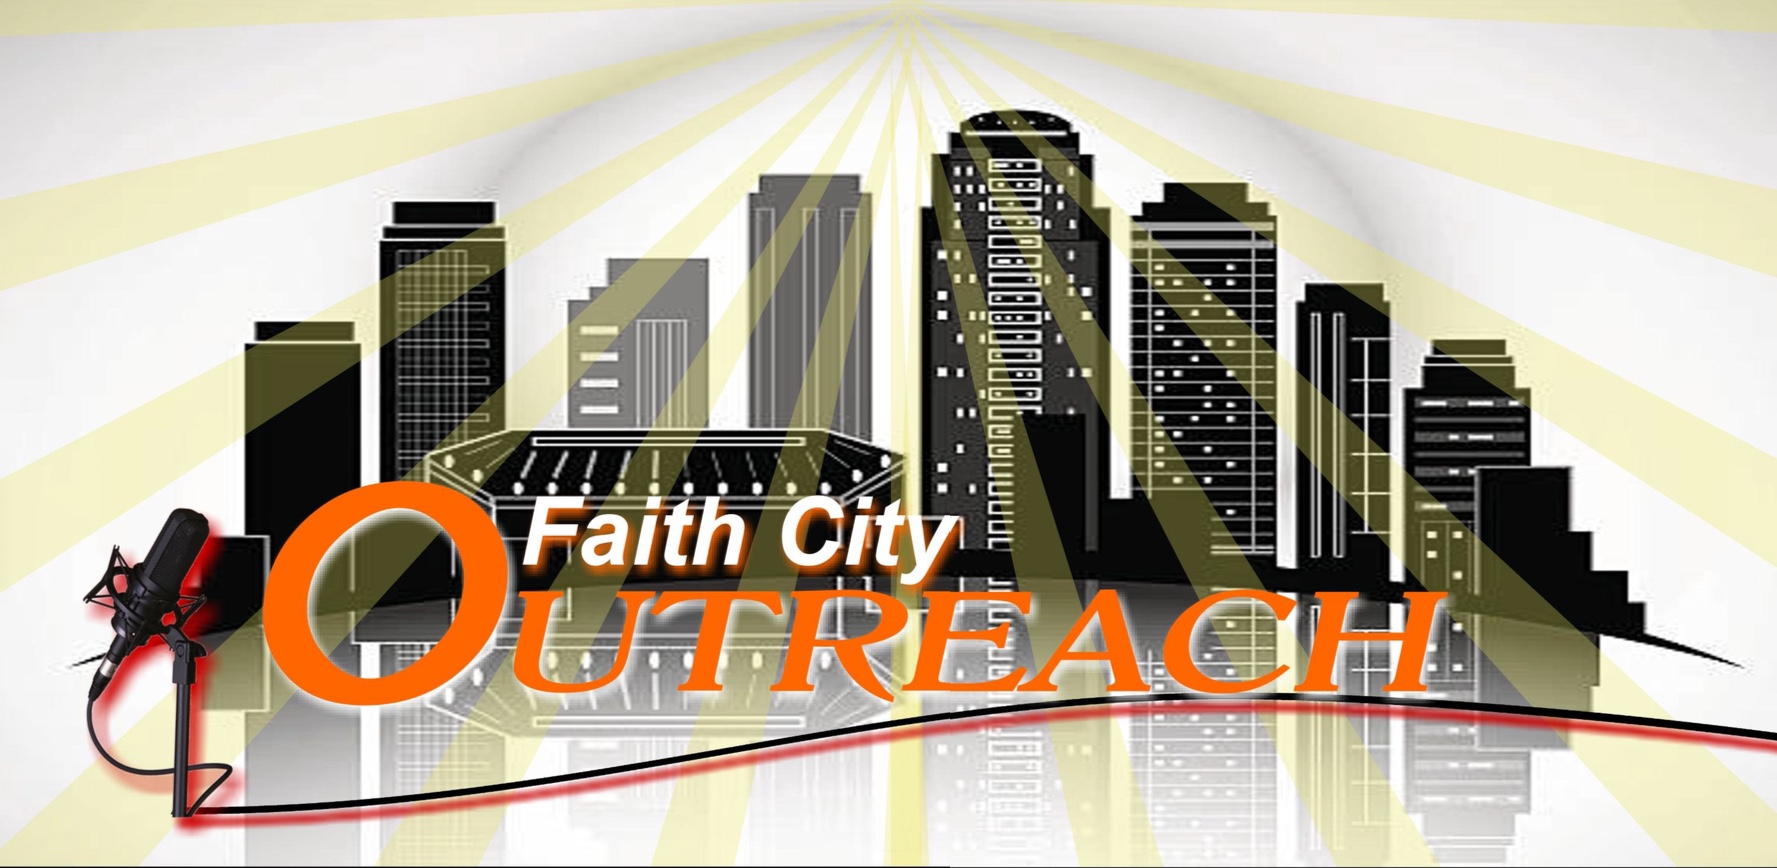 Artwork for podcast Faith City Outreach LLC